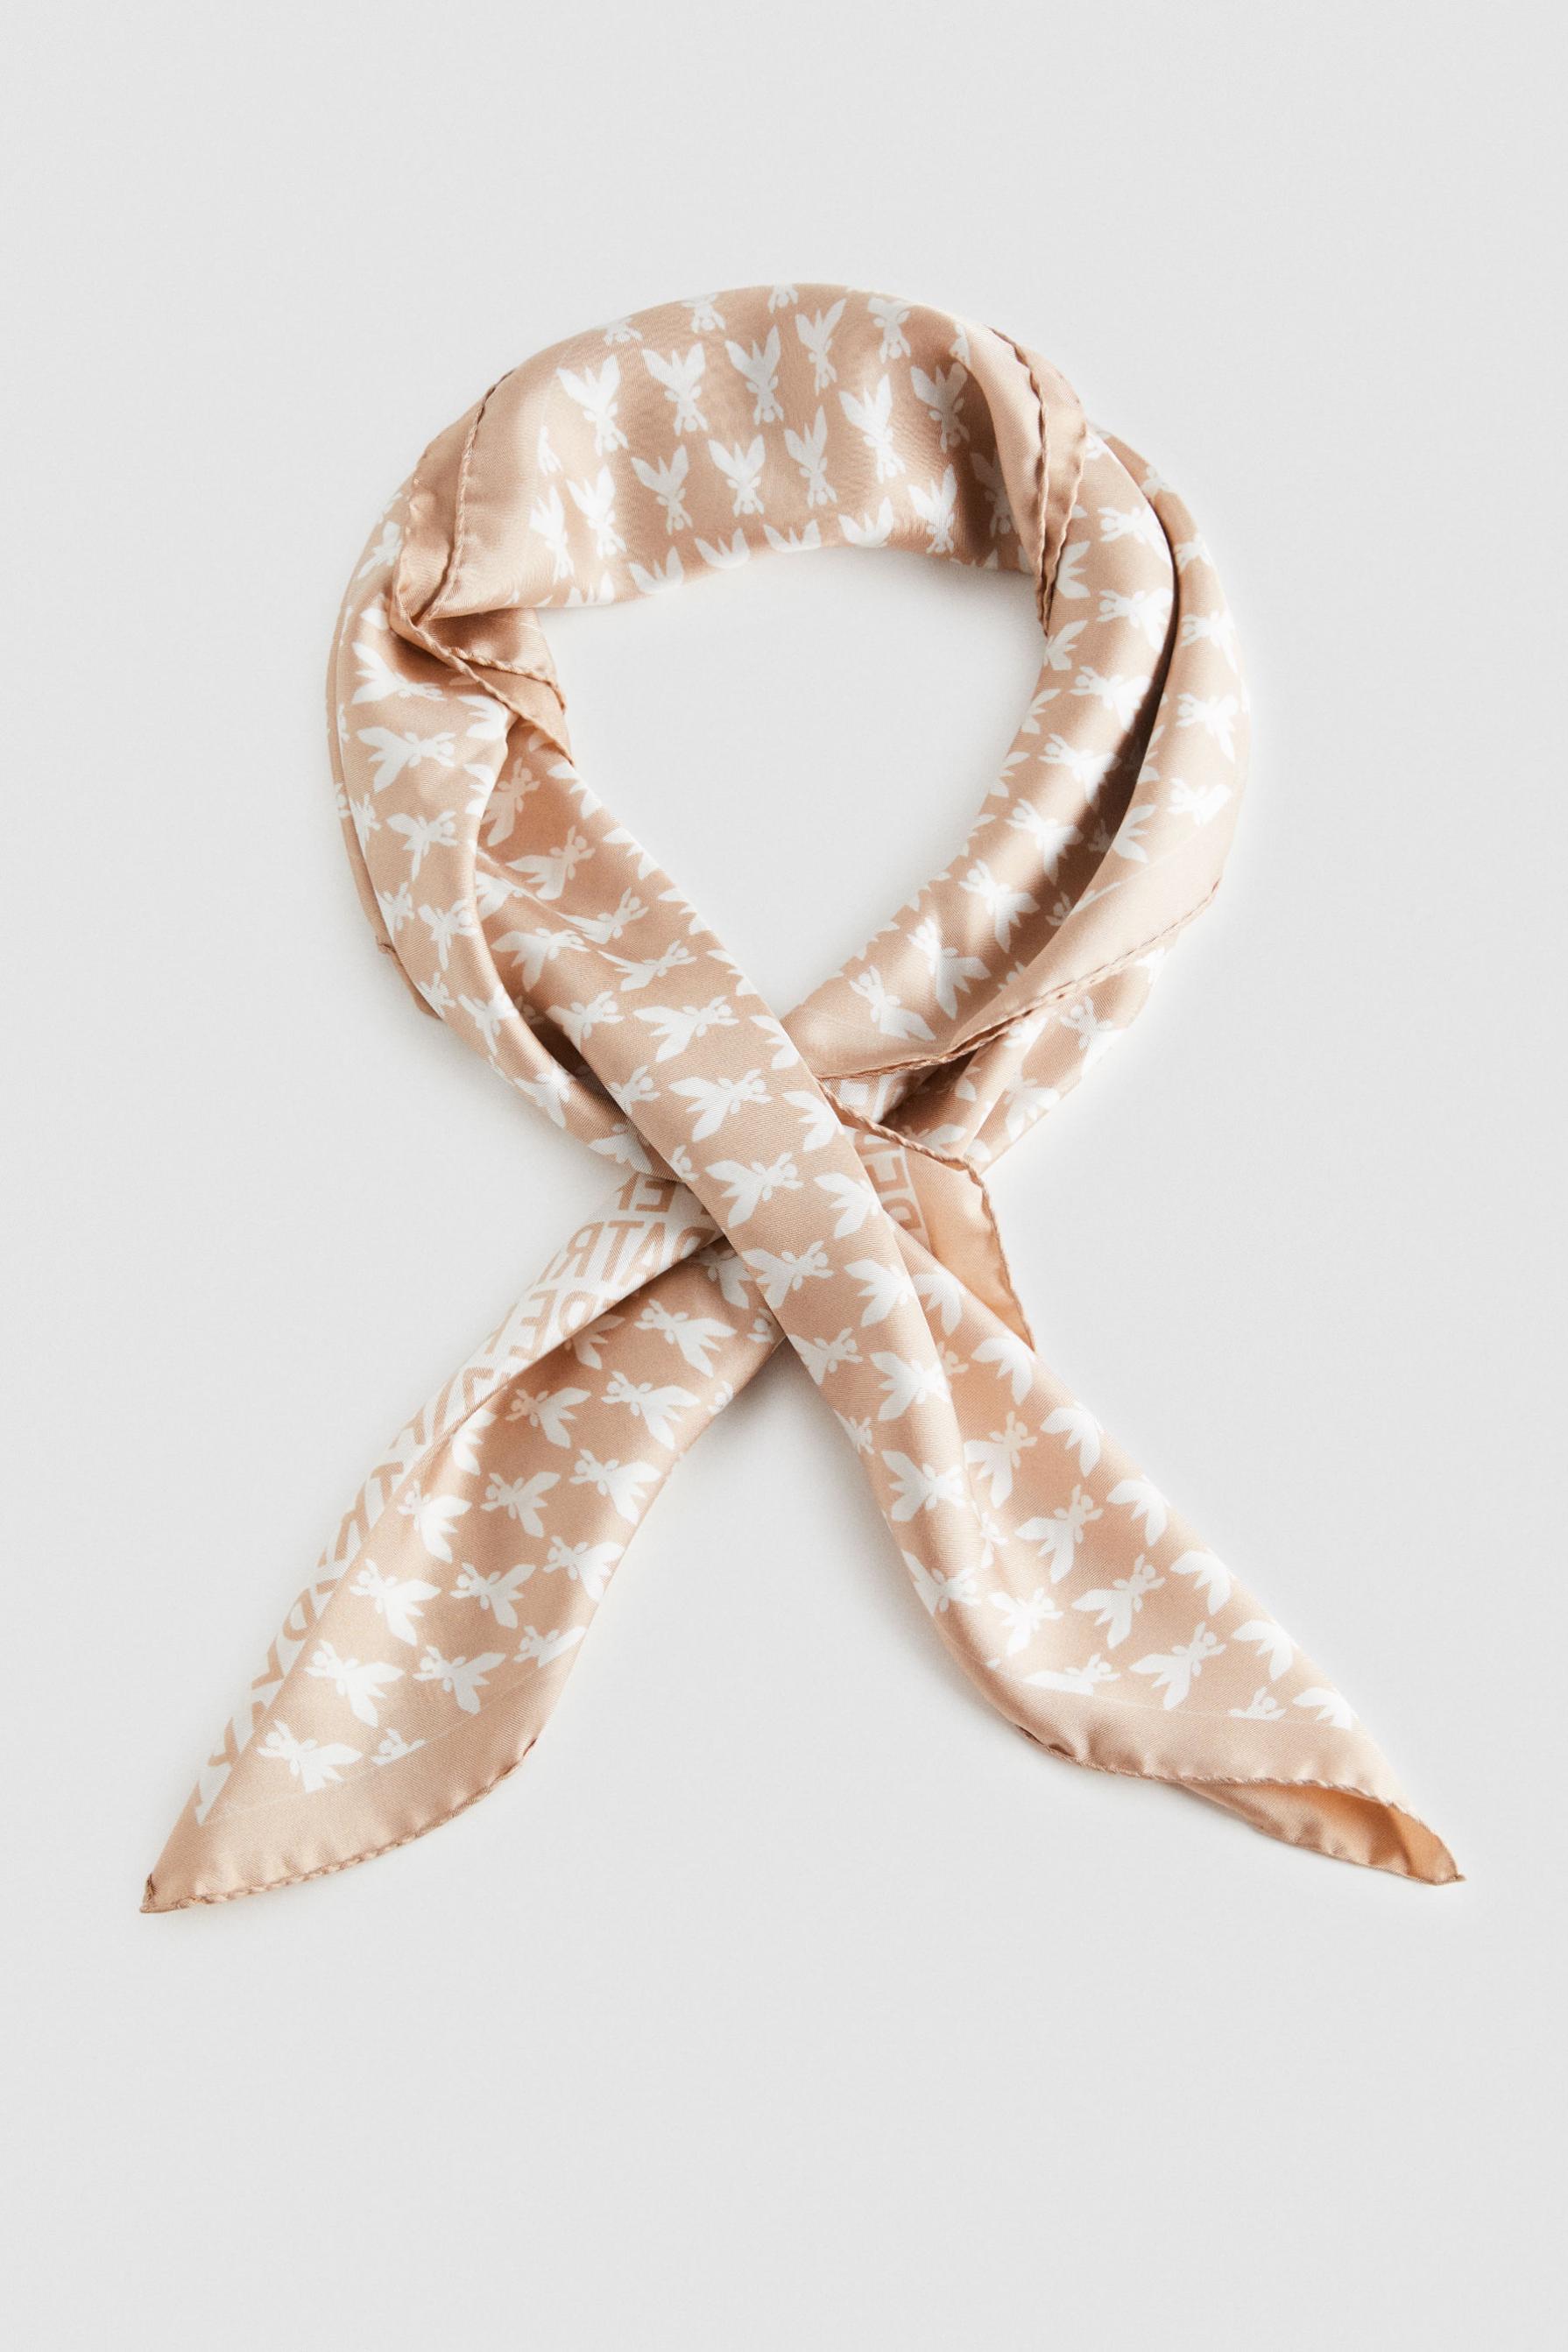 14917円 【94%OFF!】 PATRIZIA PEPE SERA Scarves and foulards レディース